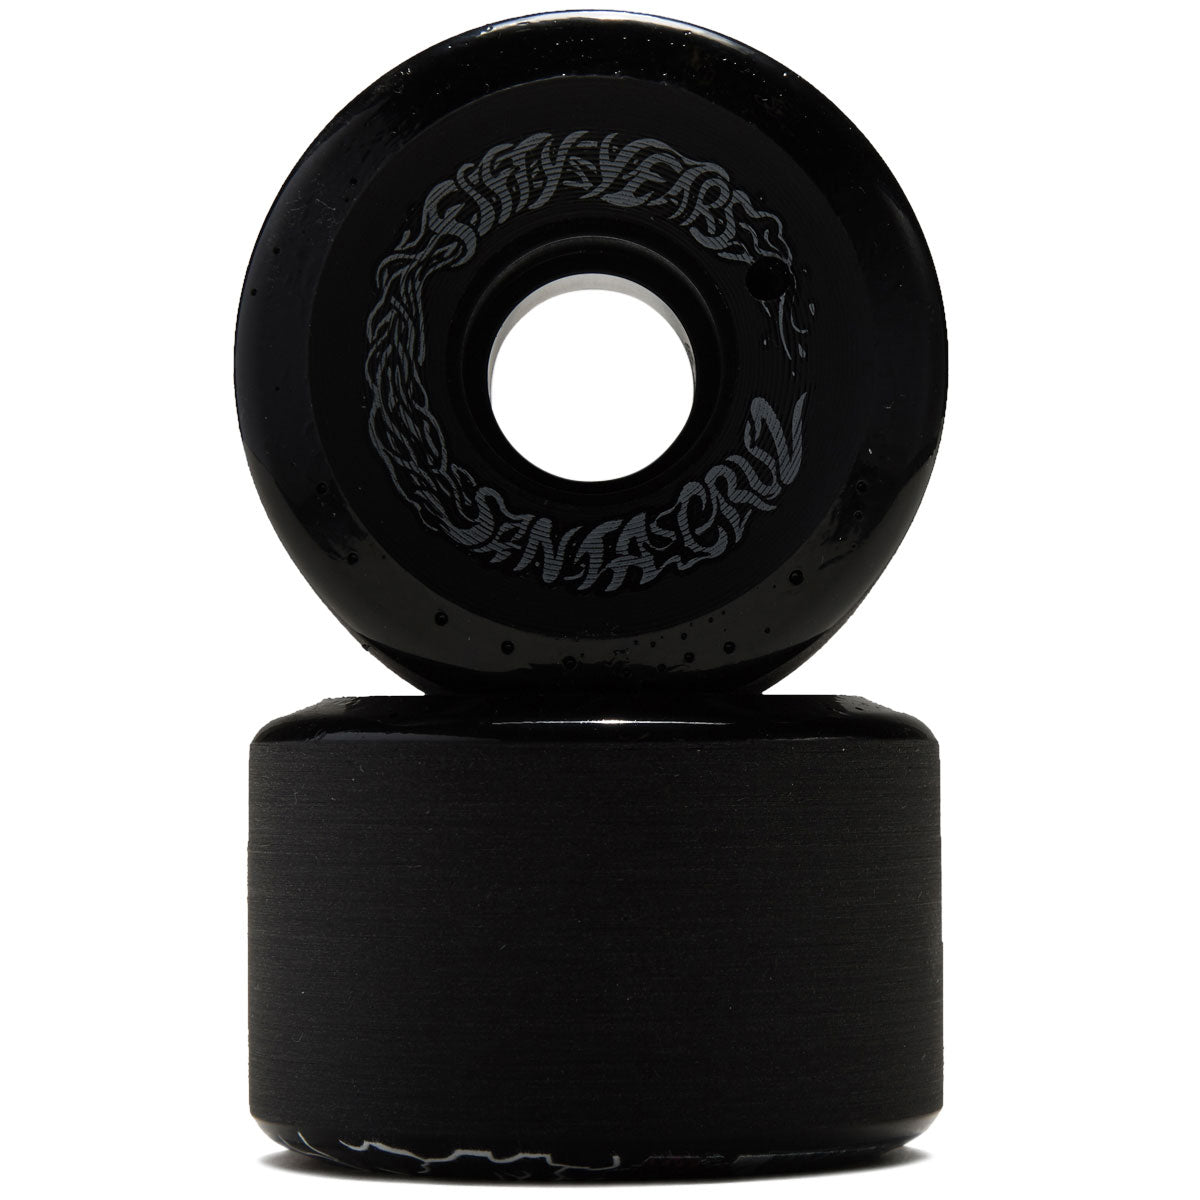 Slime Balls Malba OG Slime 86a Skateboard Wheels - Black - 60mm image 2